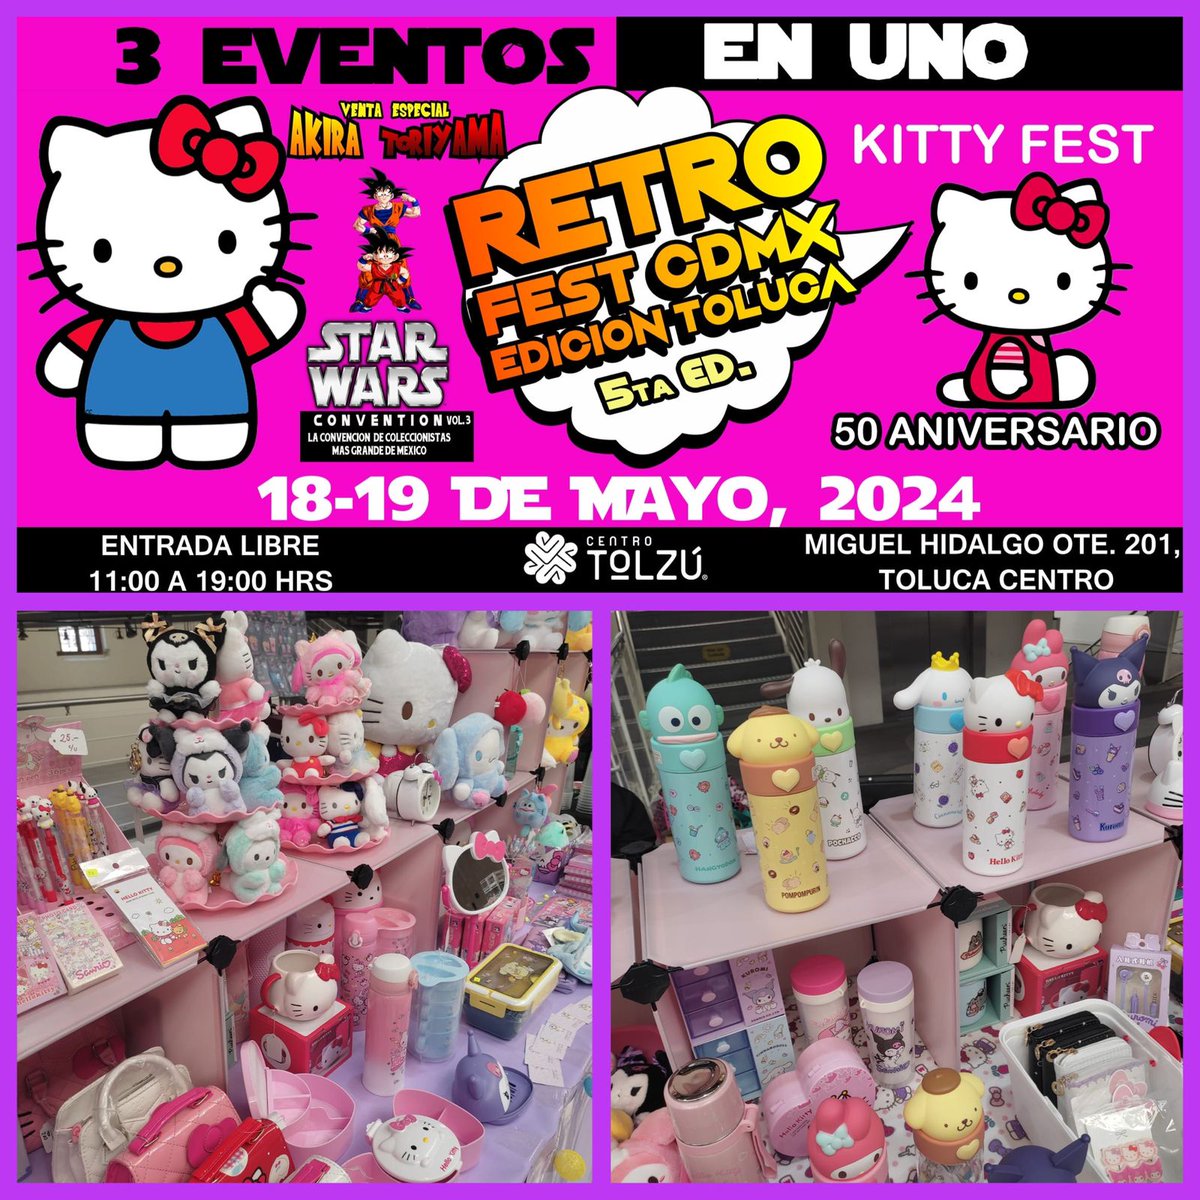 Habrá marcha imperial y también será el Kitty Fest. No falten. 18 y 19 de mayo en el Centro Tolzú, en Toluca.